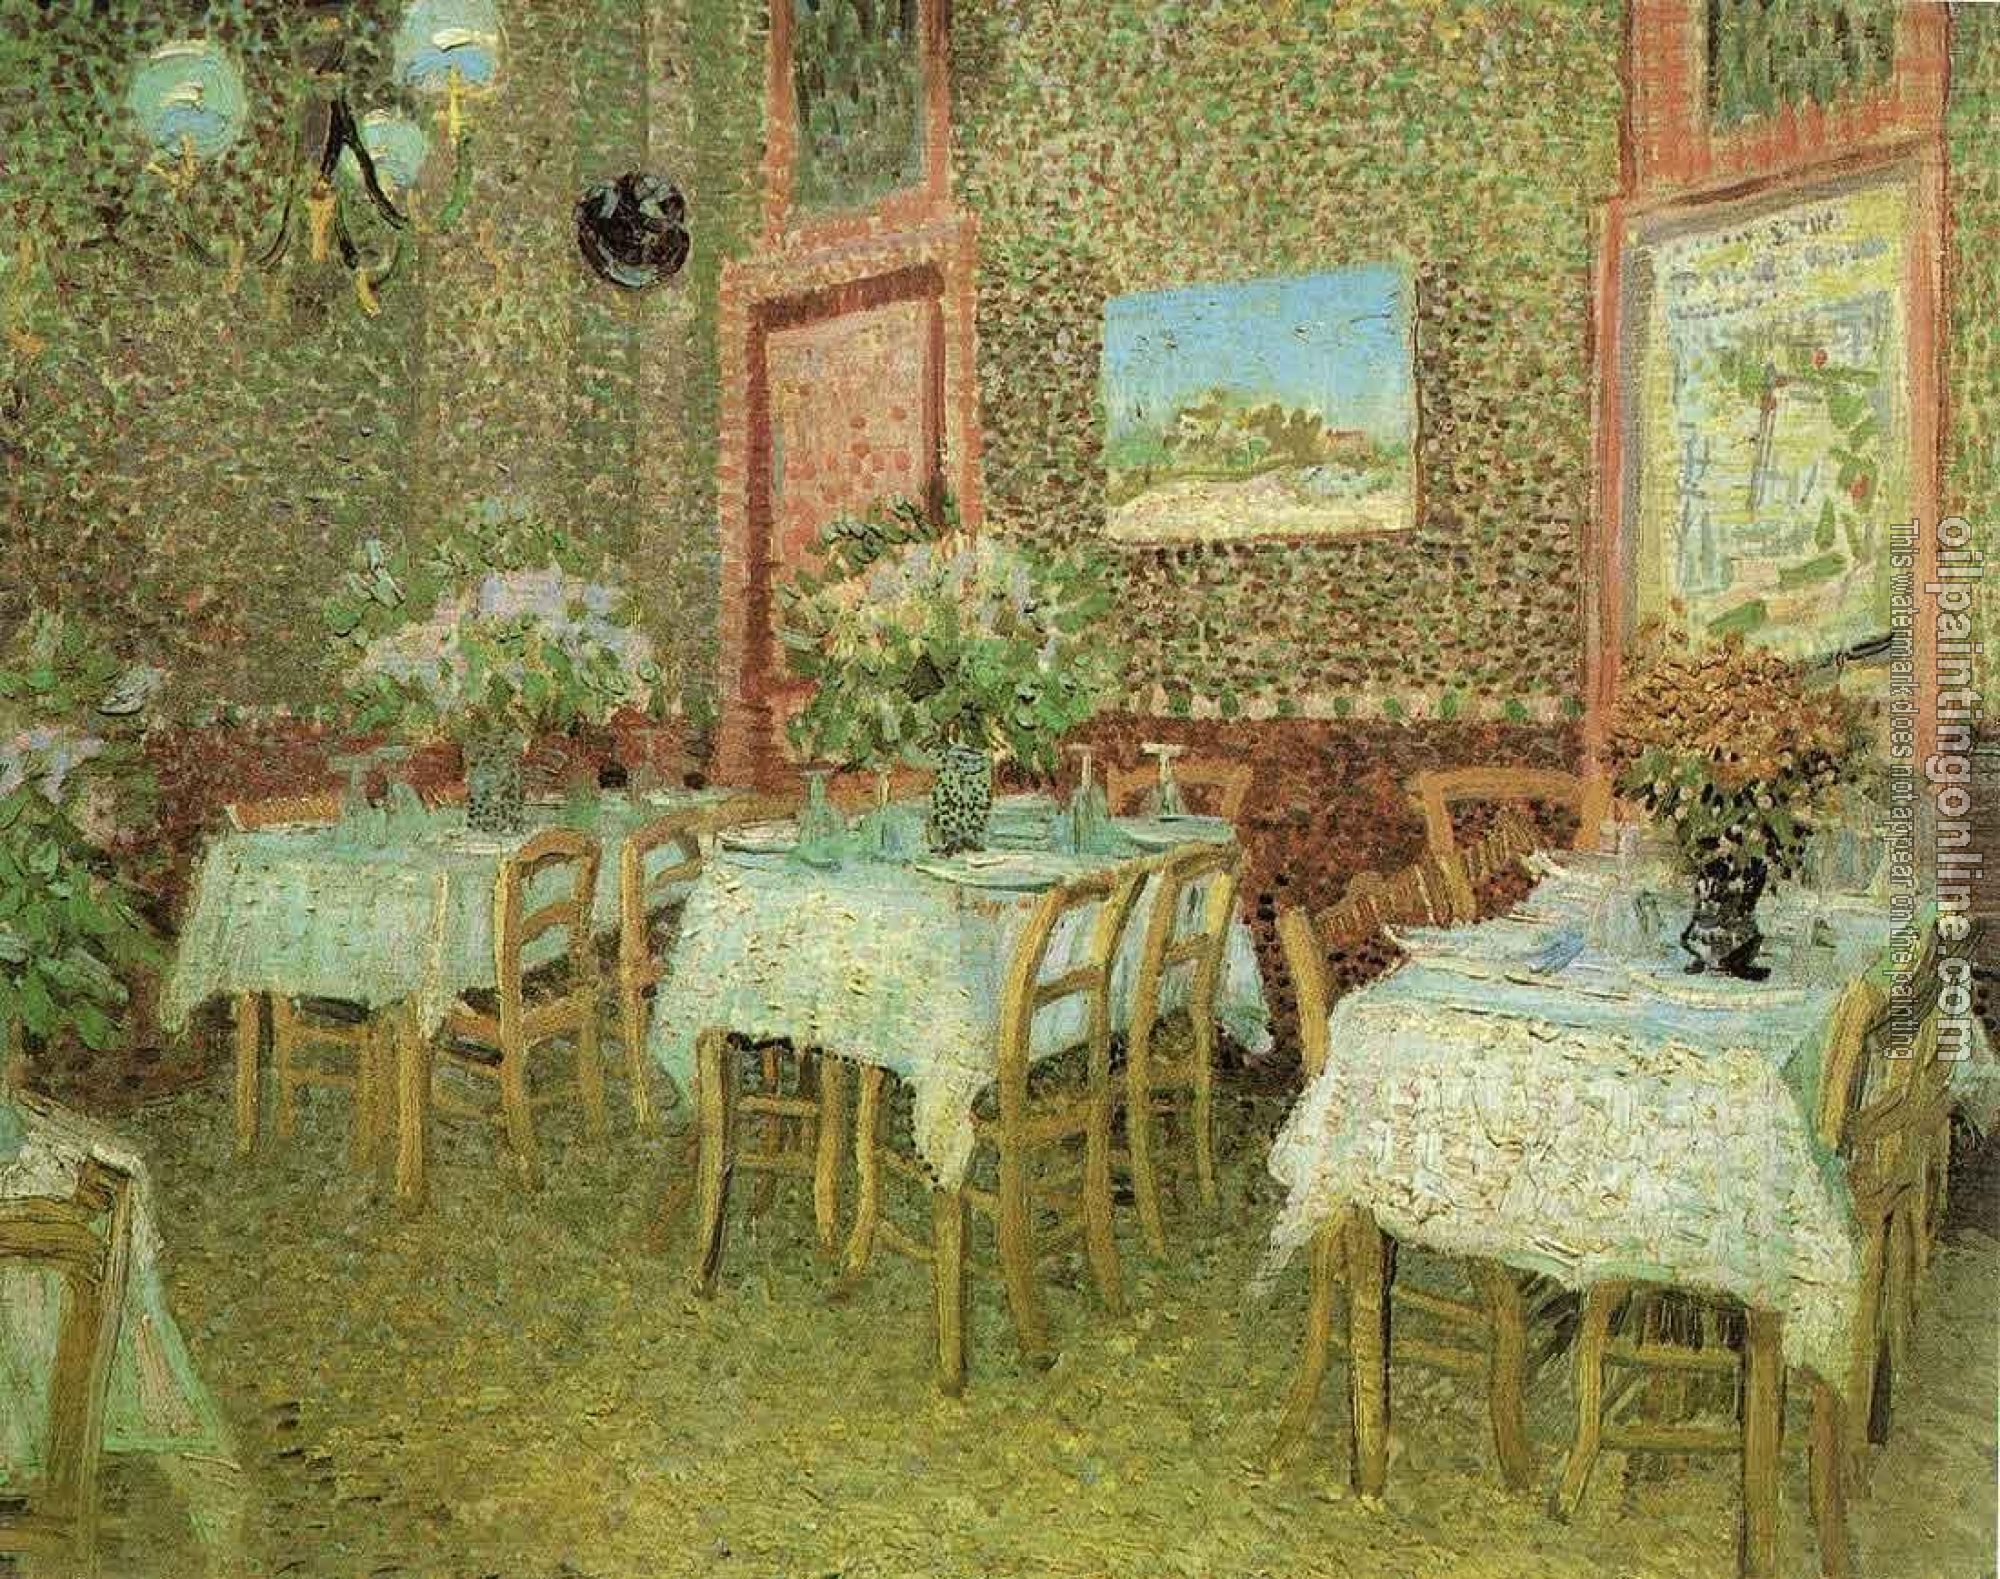 Gogh, Vincent van - Interior of a Restaurant